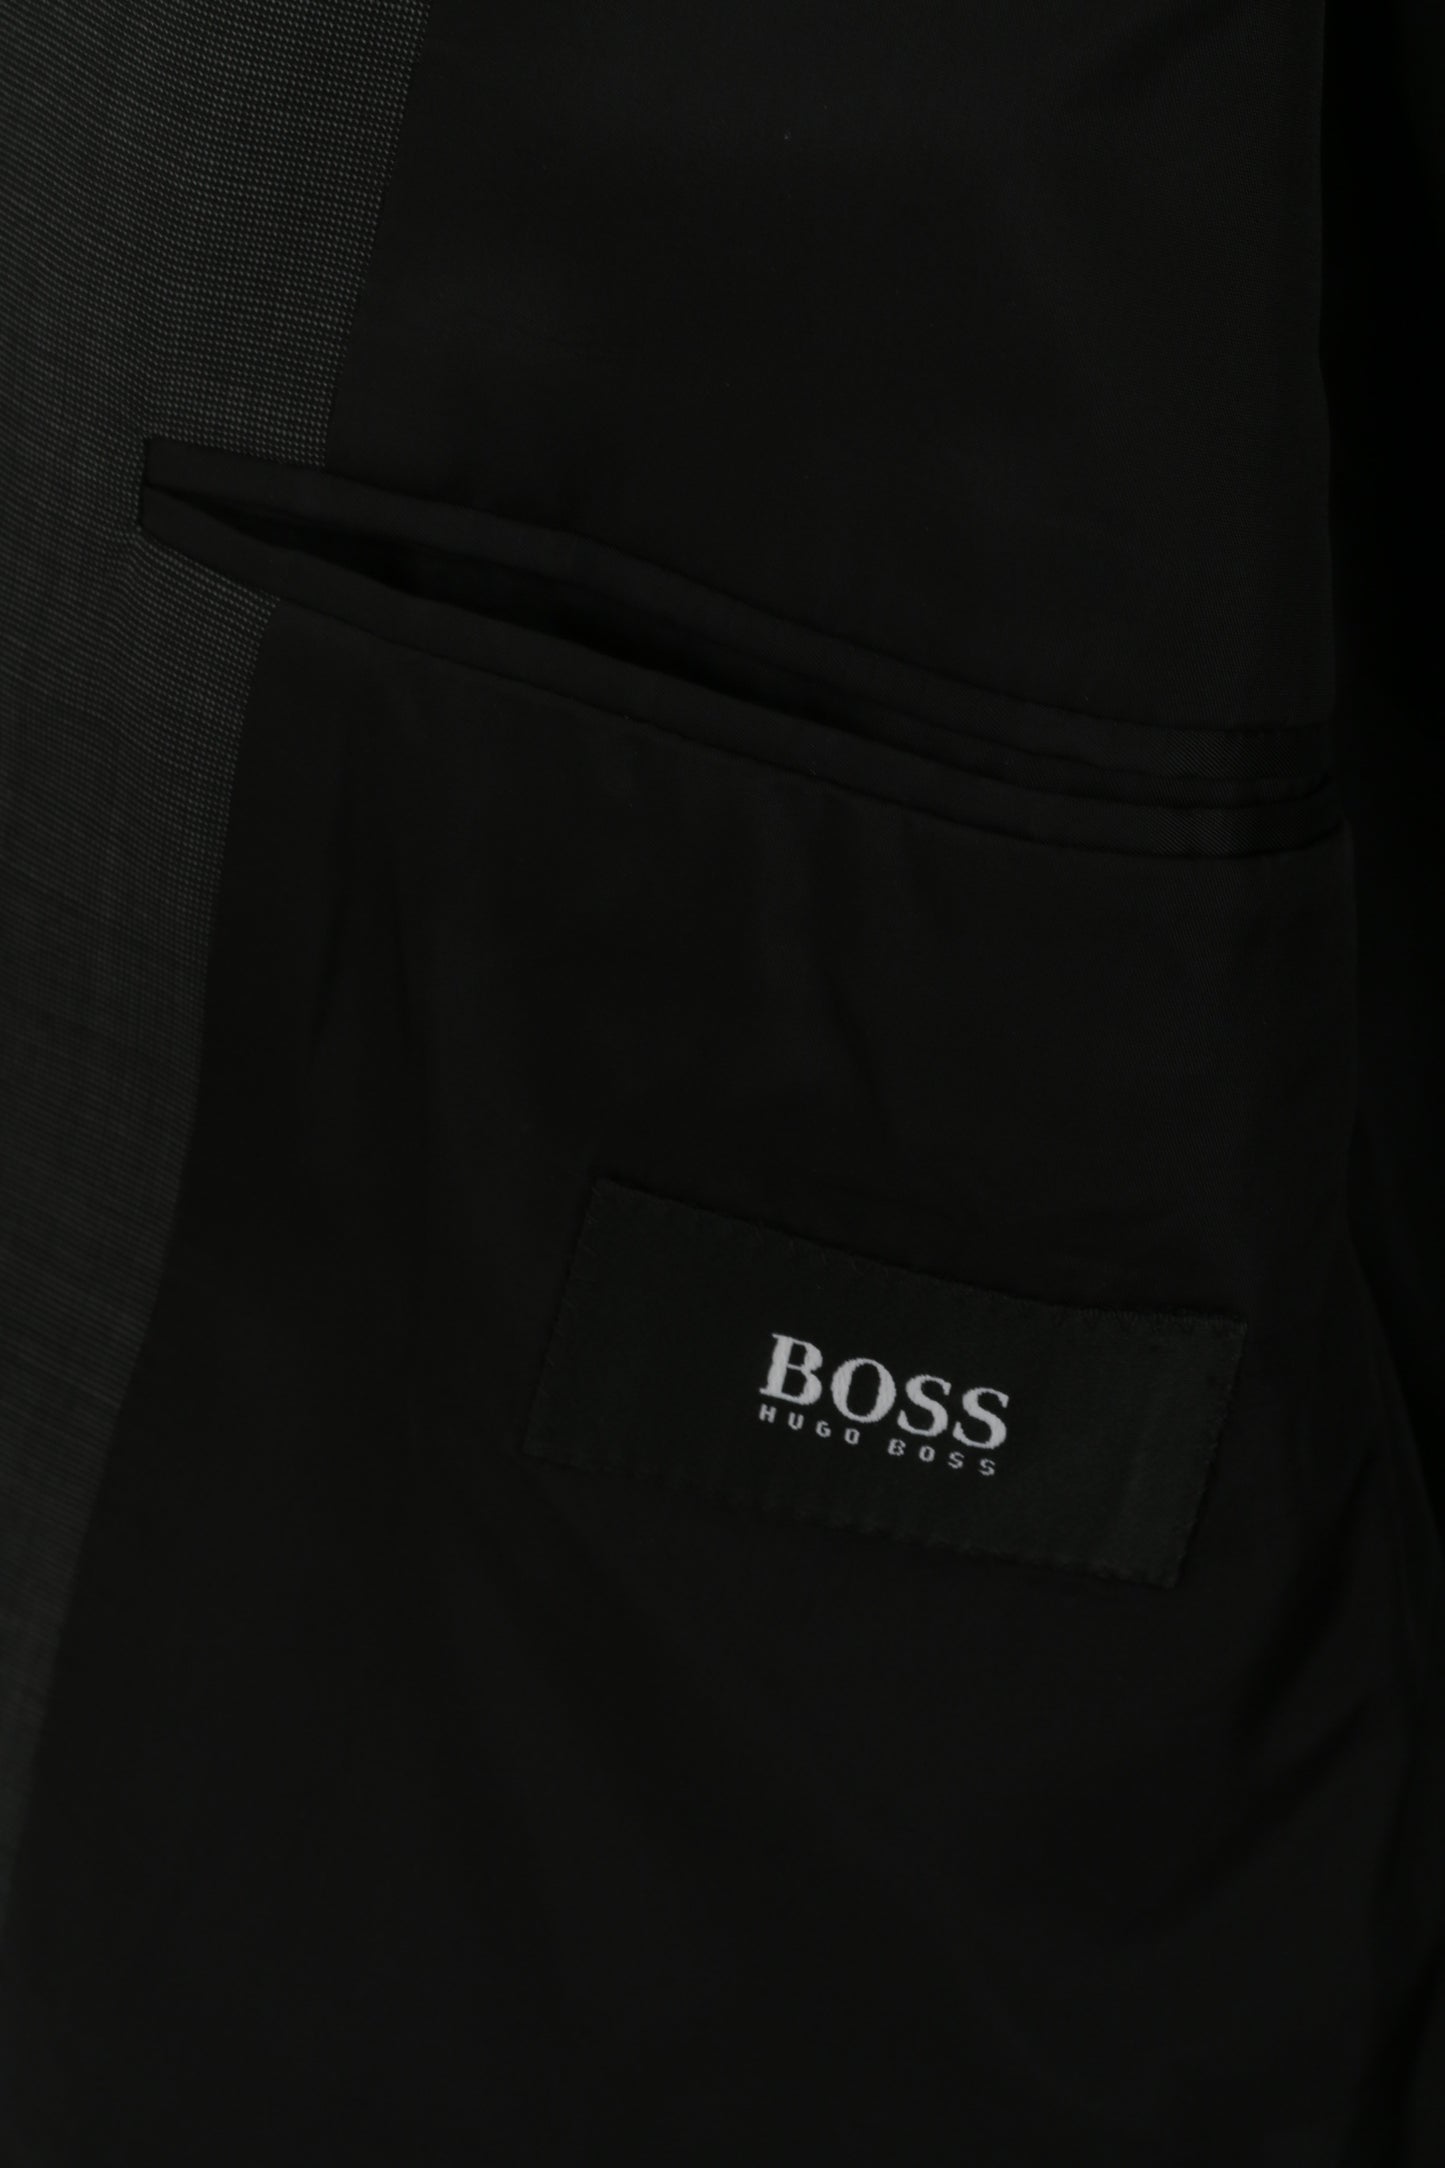 Hugo Boss Men 25 40 Blazer Giacca monopetto Da Vinci in lana vergine antracite